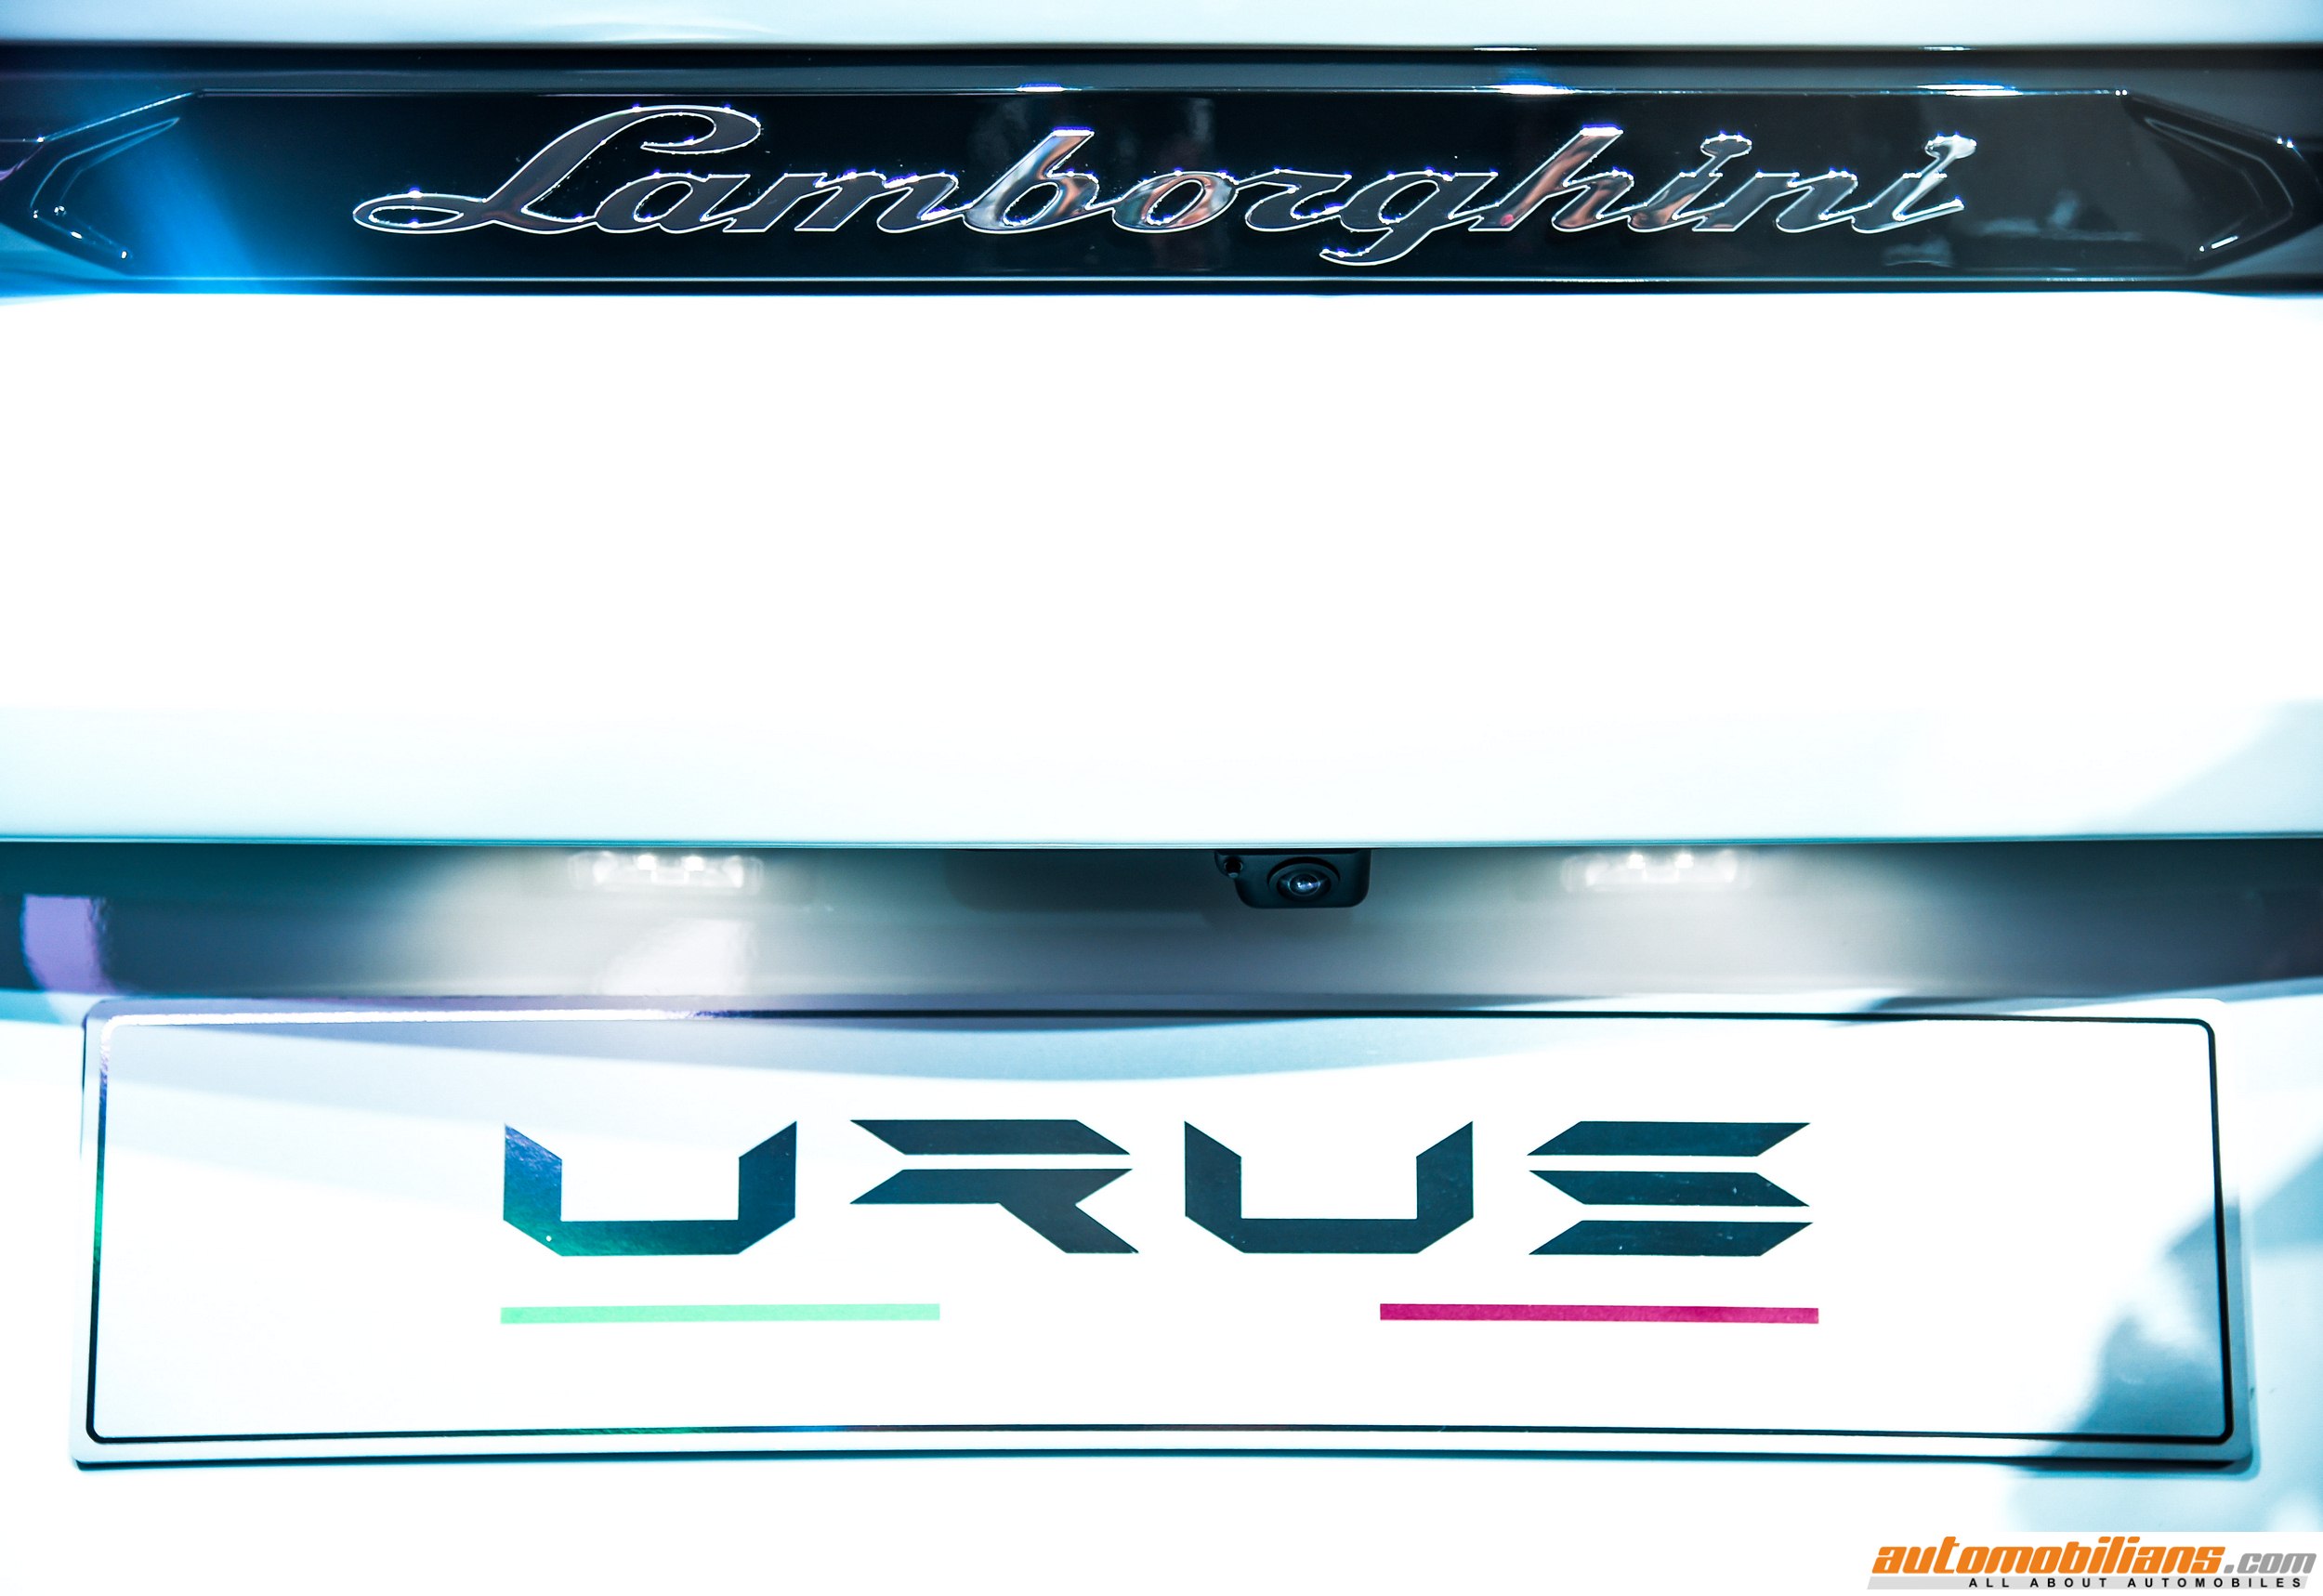 Lamborghini Urus - Picture Gallery (India Launch)